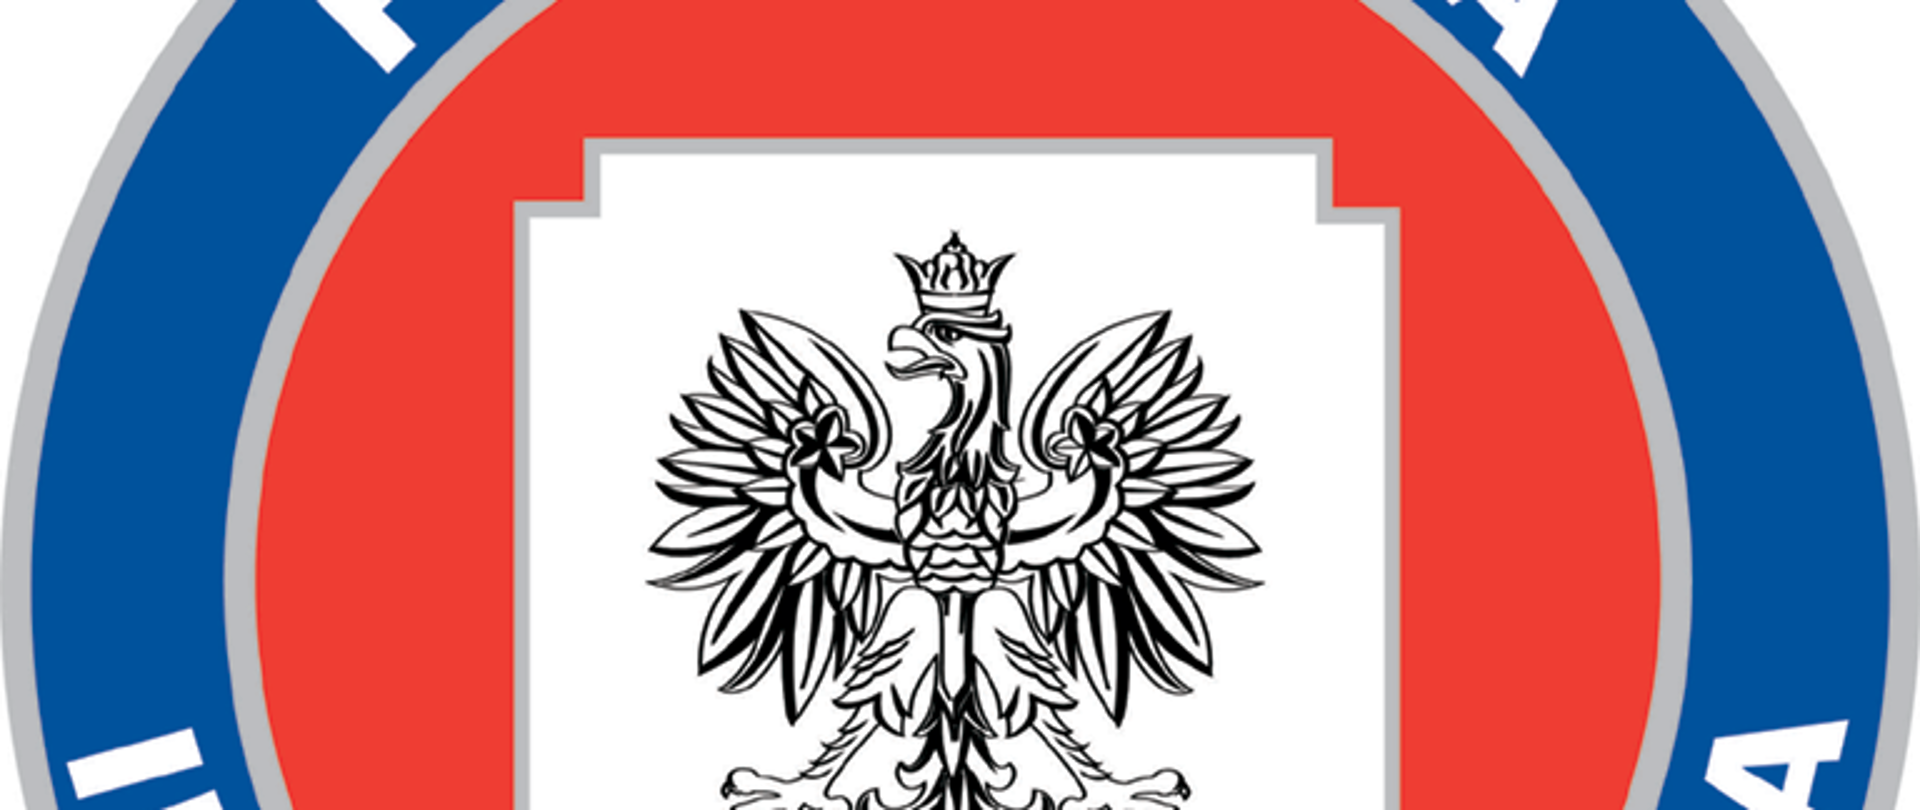 logo Państwowa Inspekcja Sanitarna